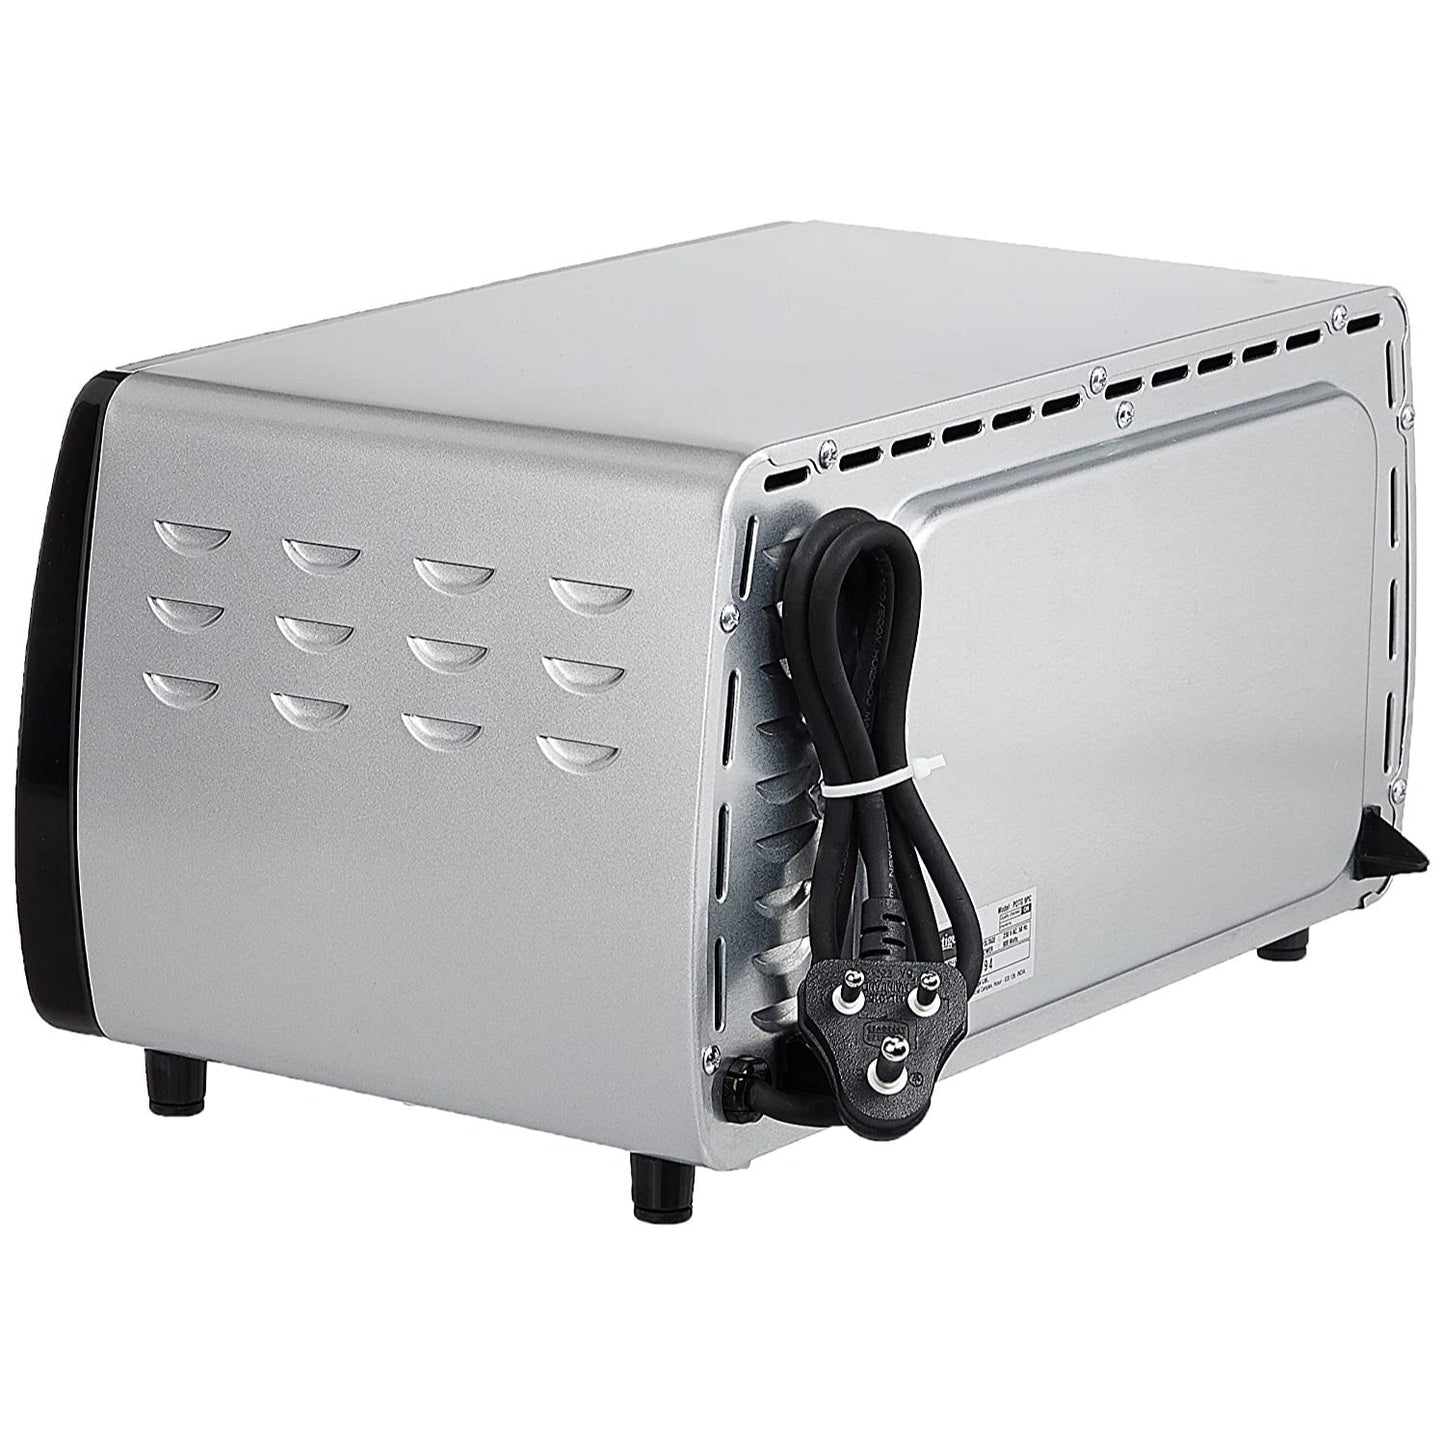 Prestige POTG 9PC Oven Toaster Griller, 9 Litres